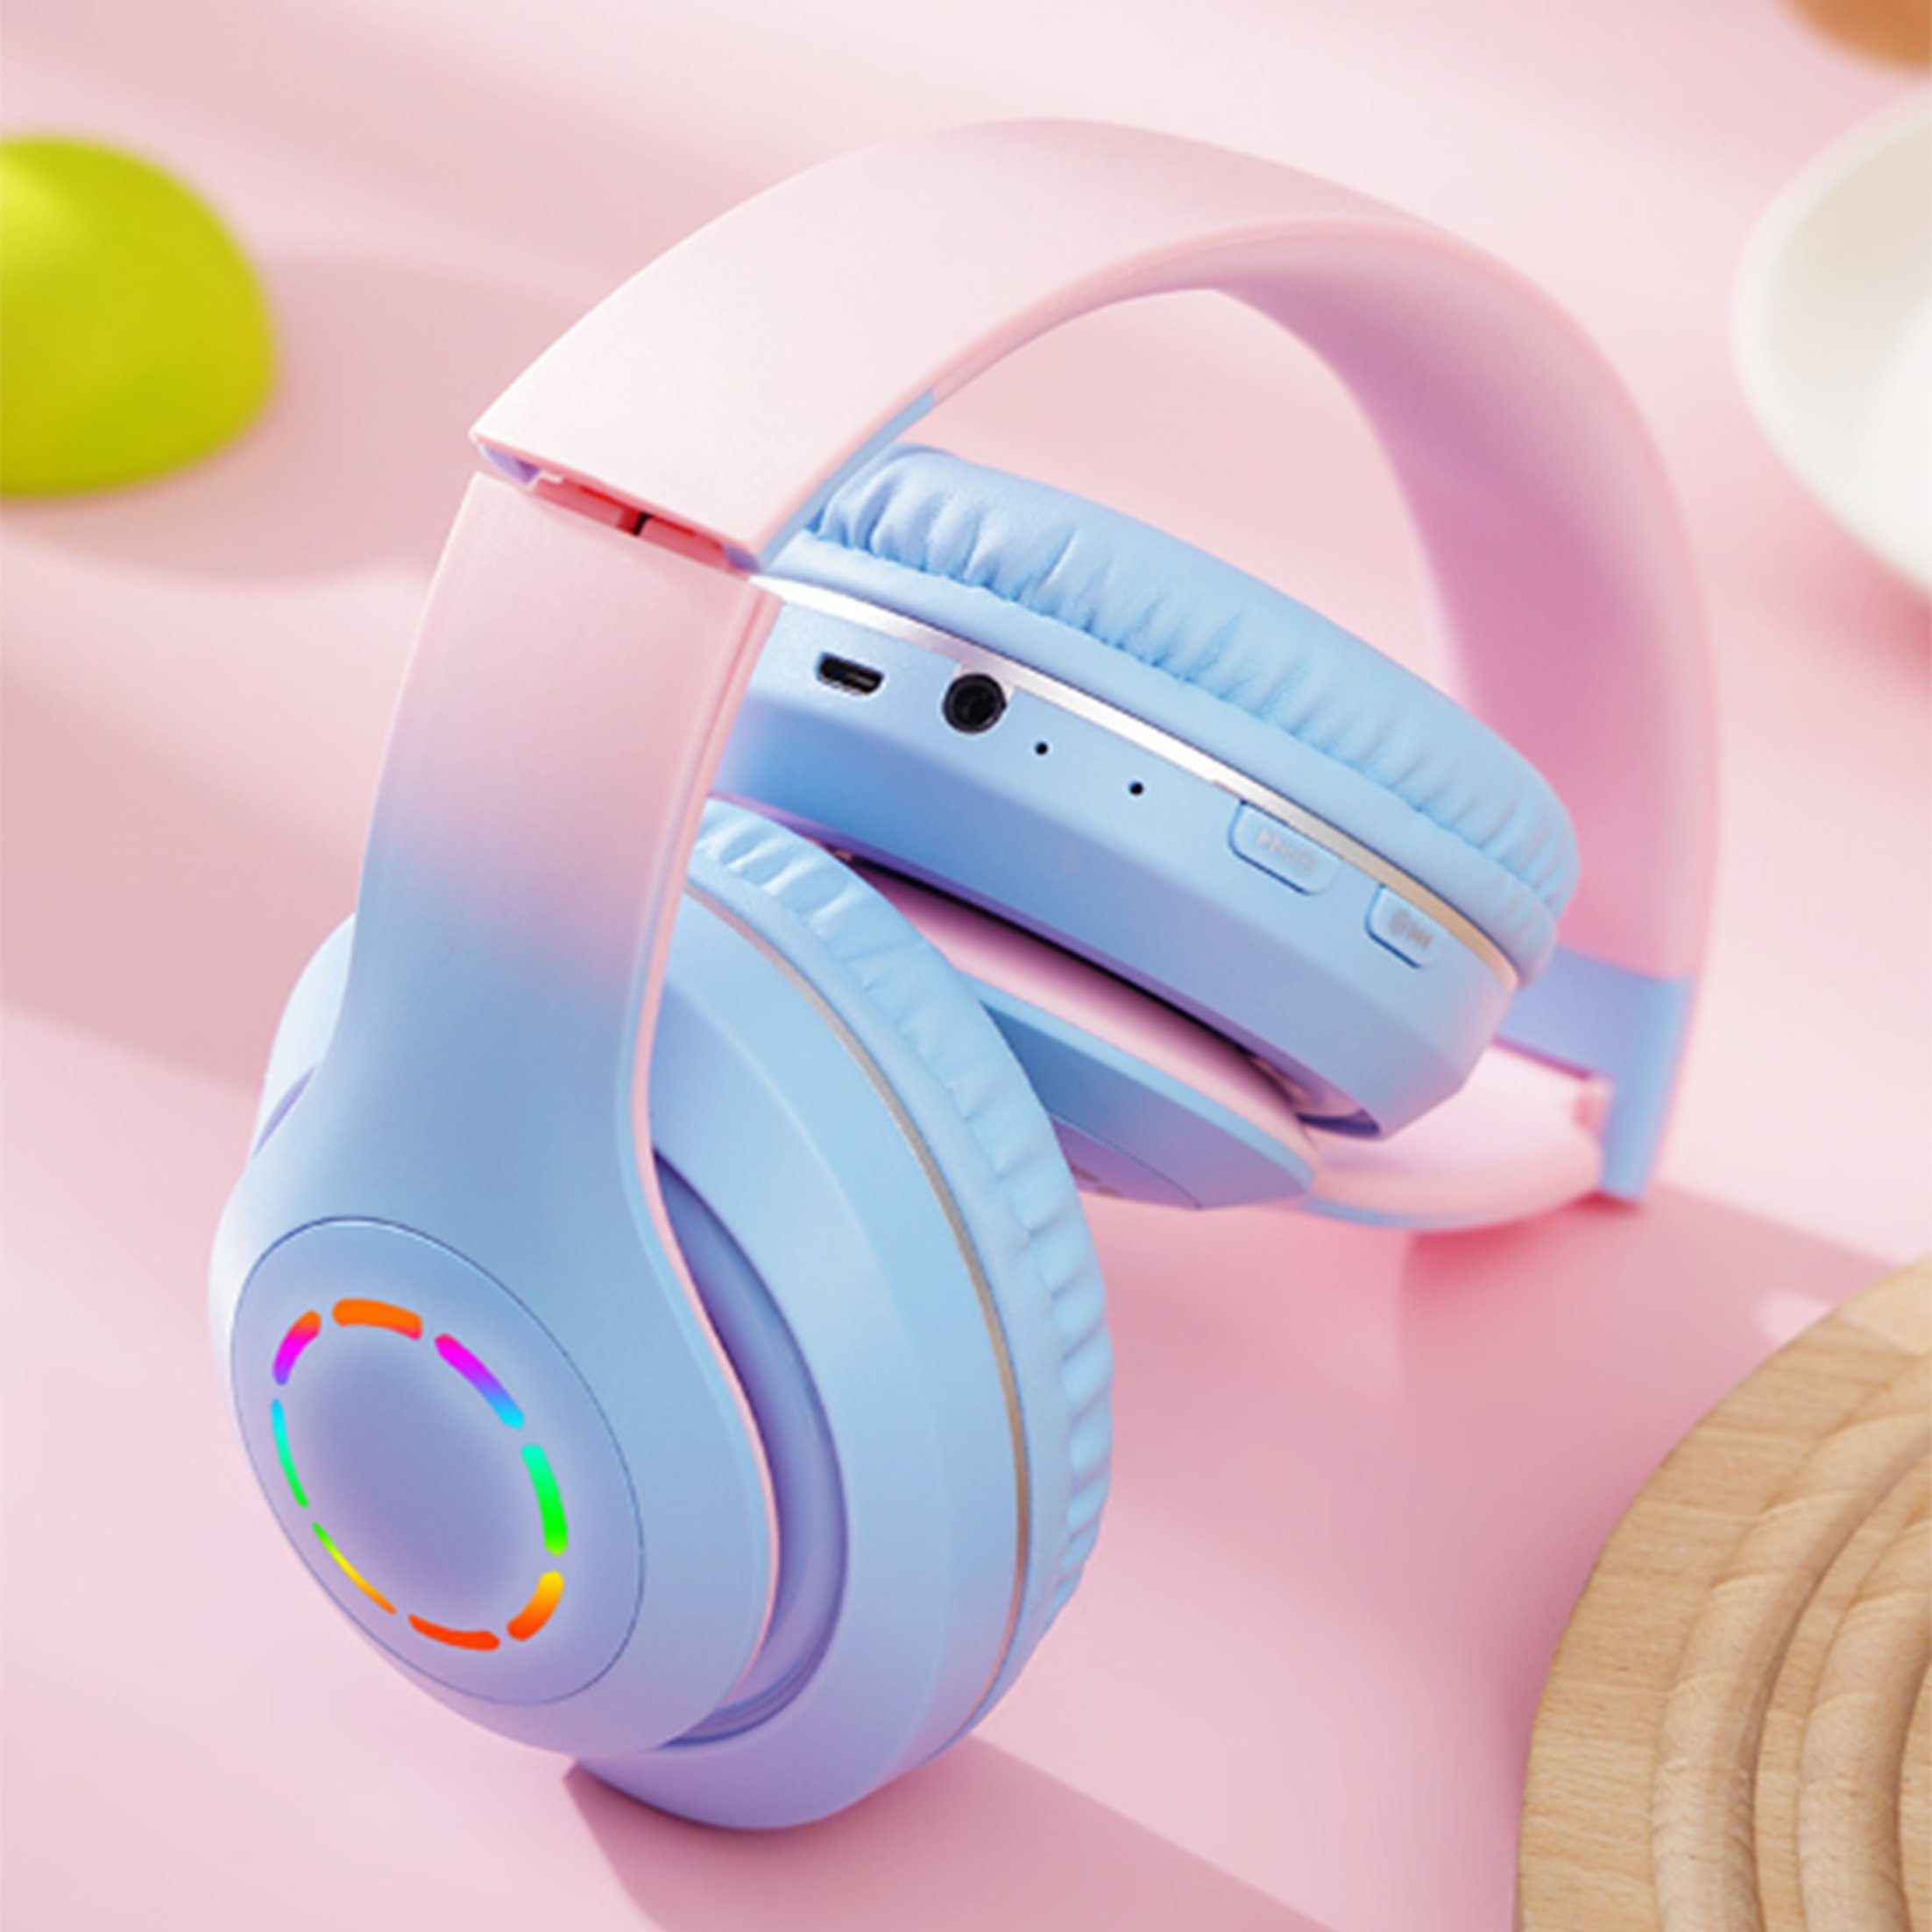 Grün Funk-Kopfhörer Kabelloses Farbverlauf Headset Ear Diida Kopfhörer,Bluetooth-Kopfhörer,Over